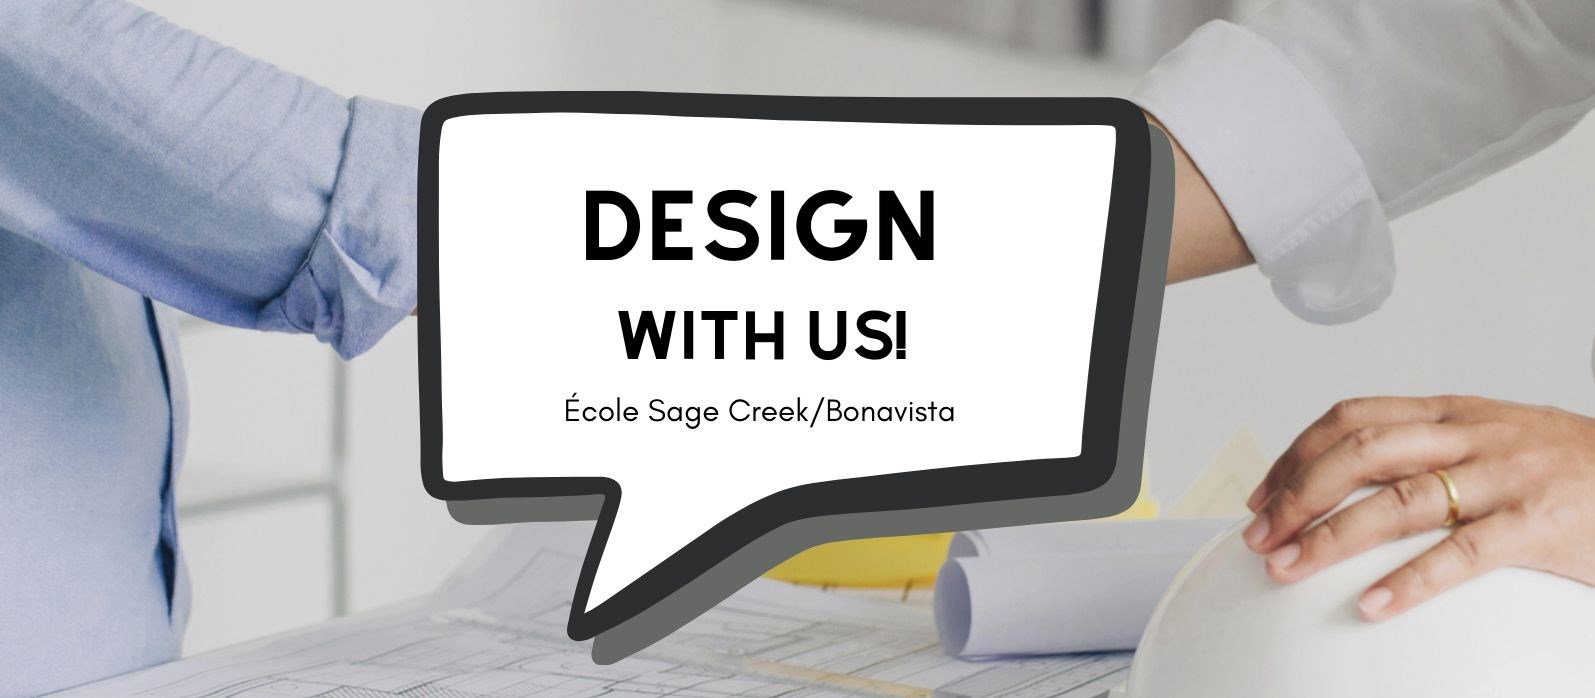 Design with Us! École Sage Creek/Bonavista